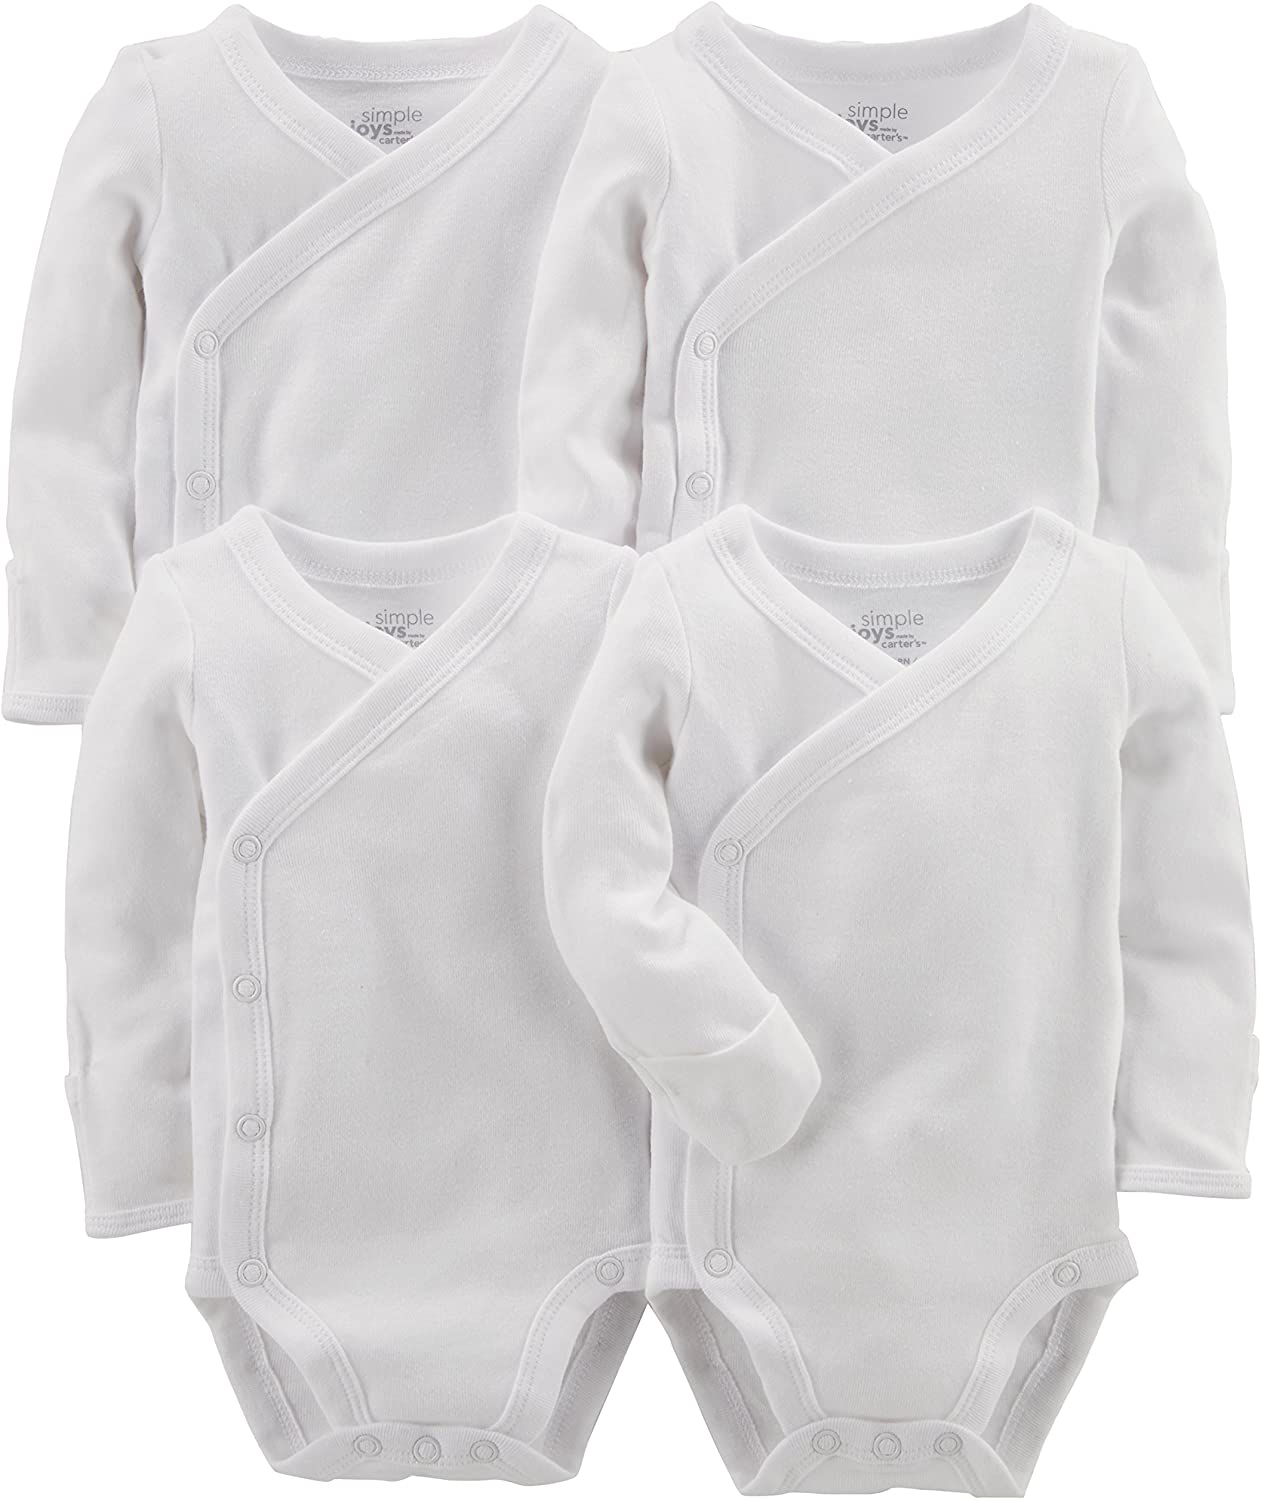 Simple Joys by Carter's Baby 4Pack Side Snap Bodysuit, White, Size lIRa eBay